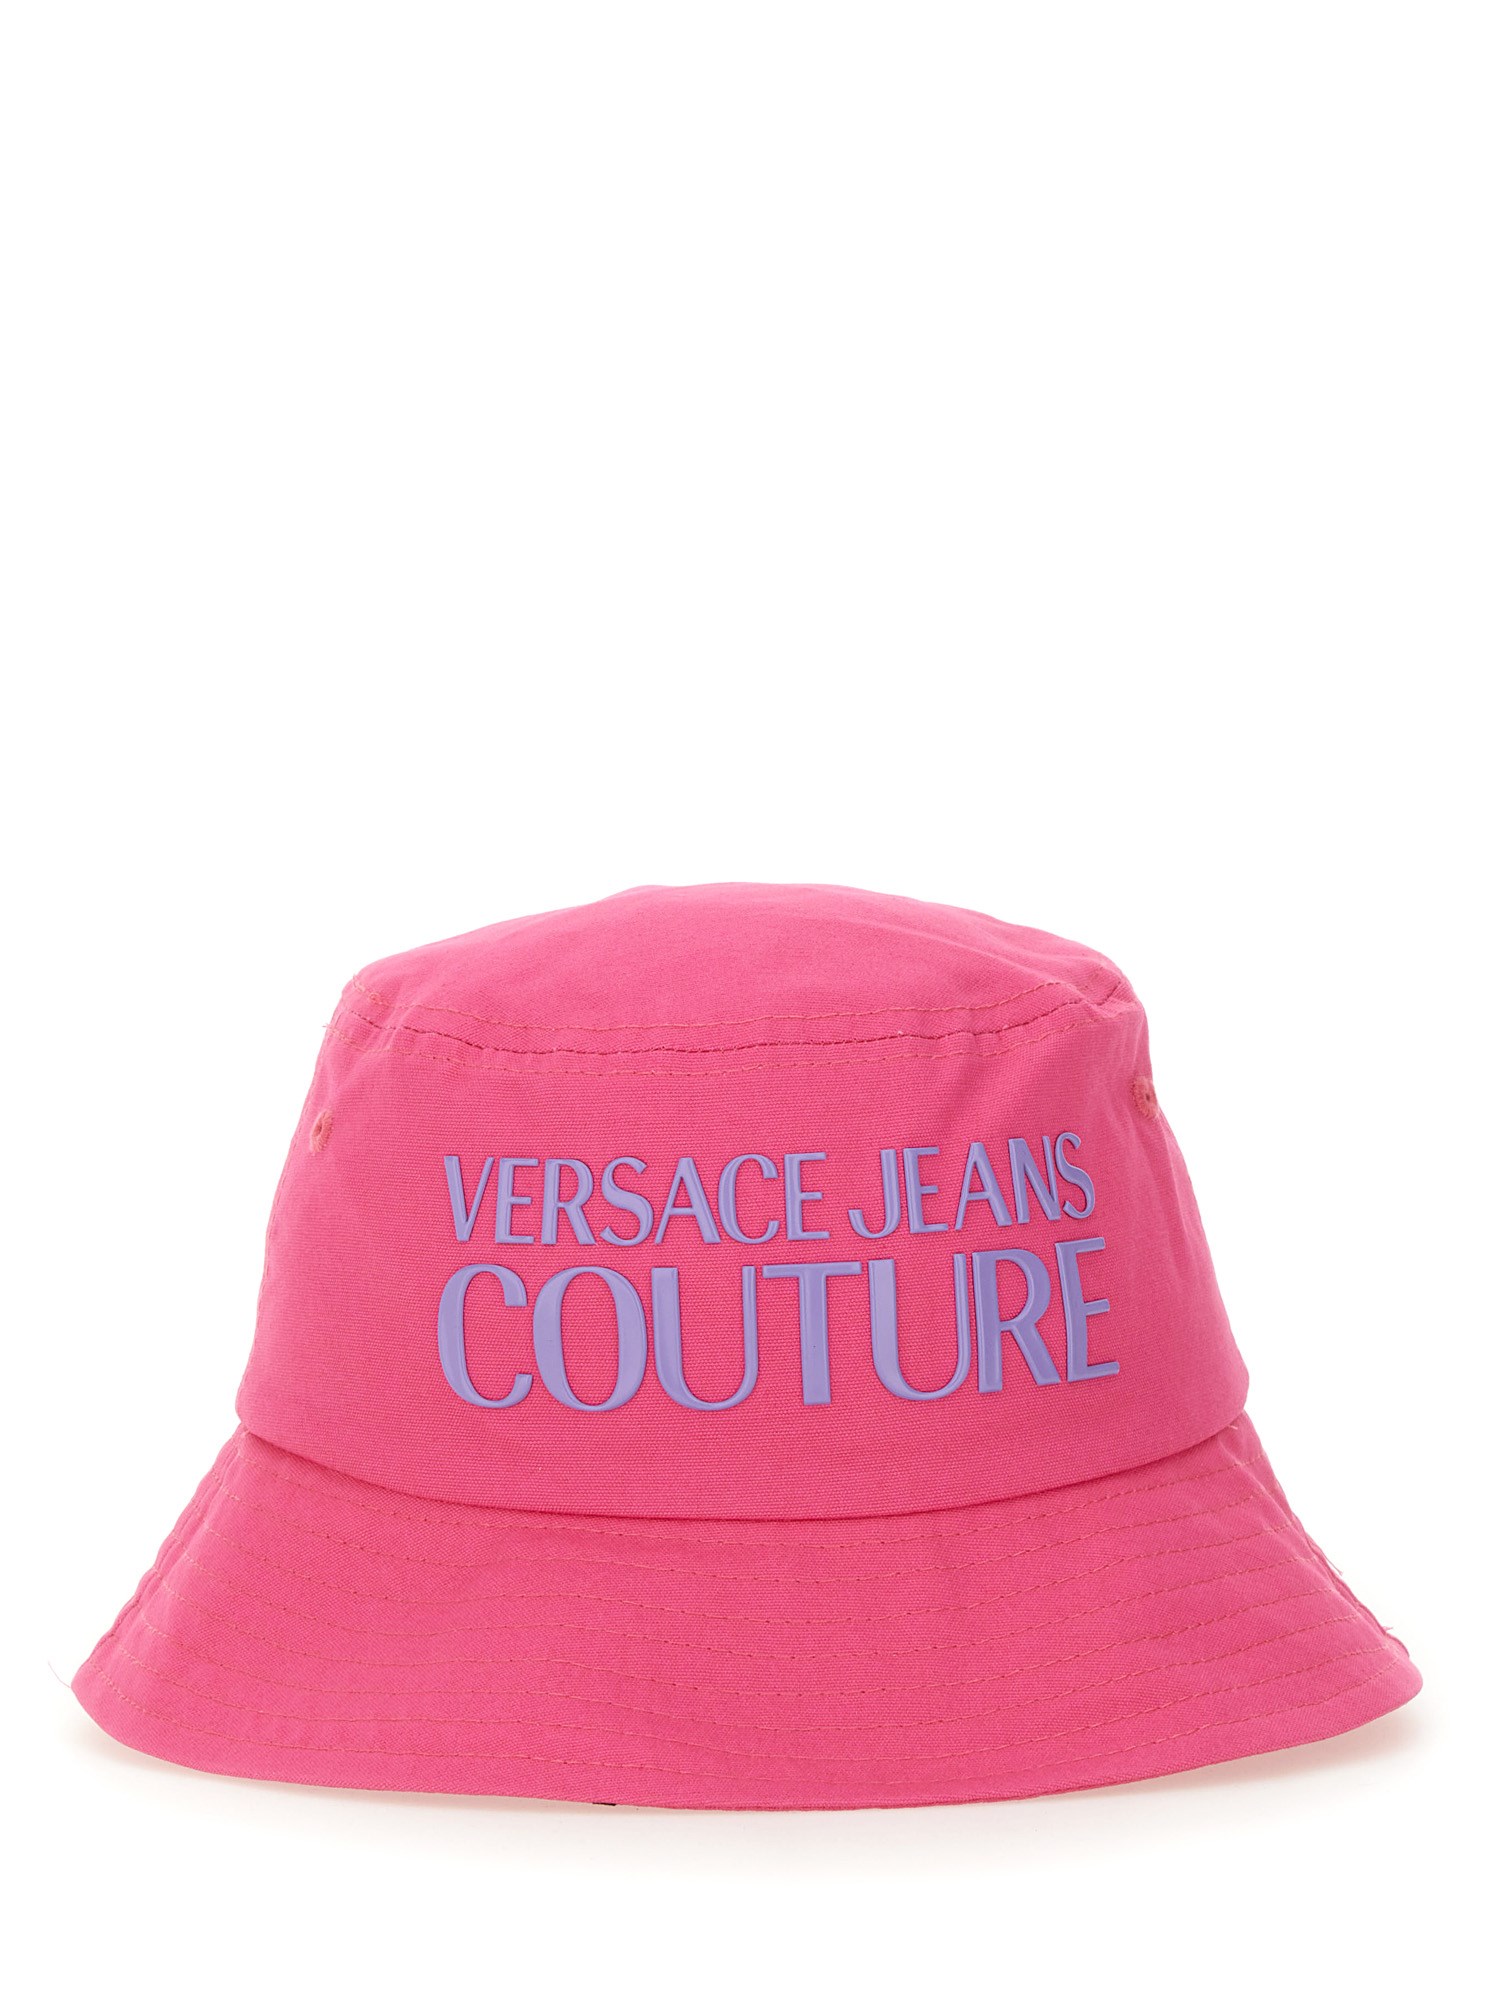 Versace Jeans Couture versace jeans couture bucket hat